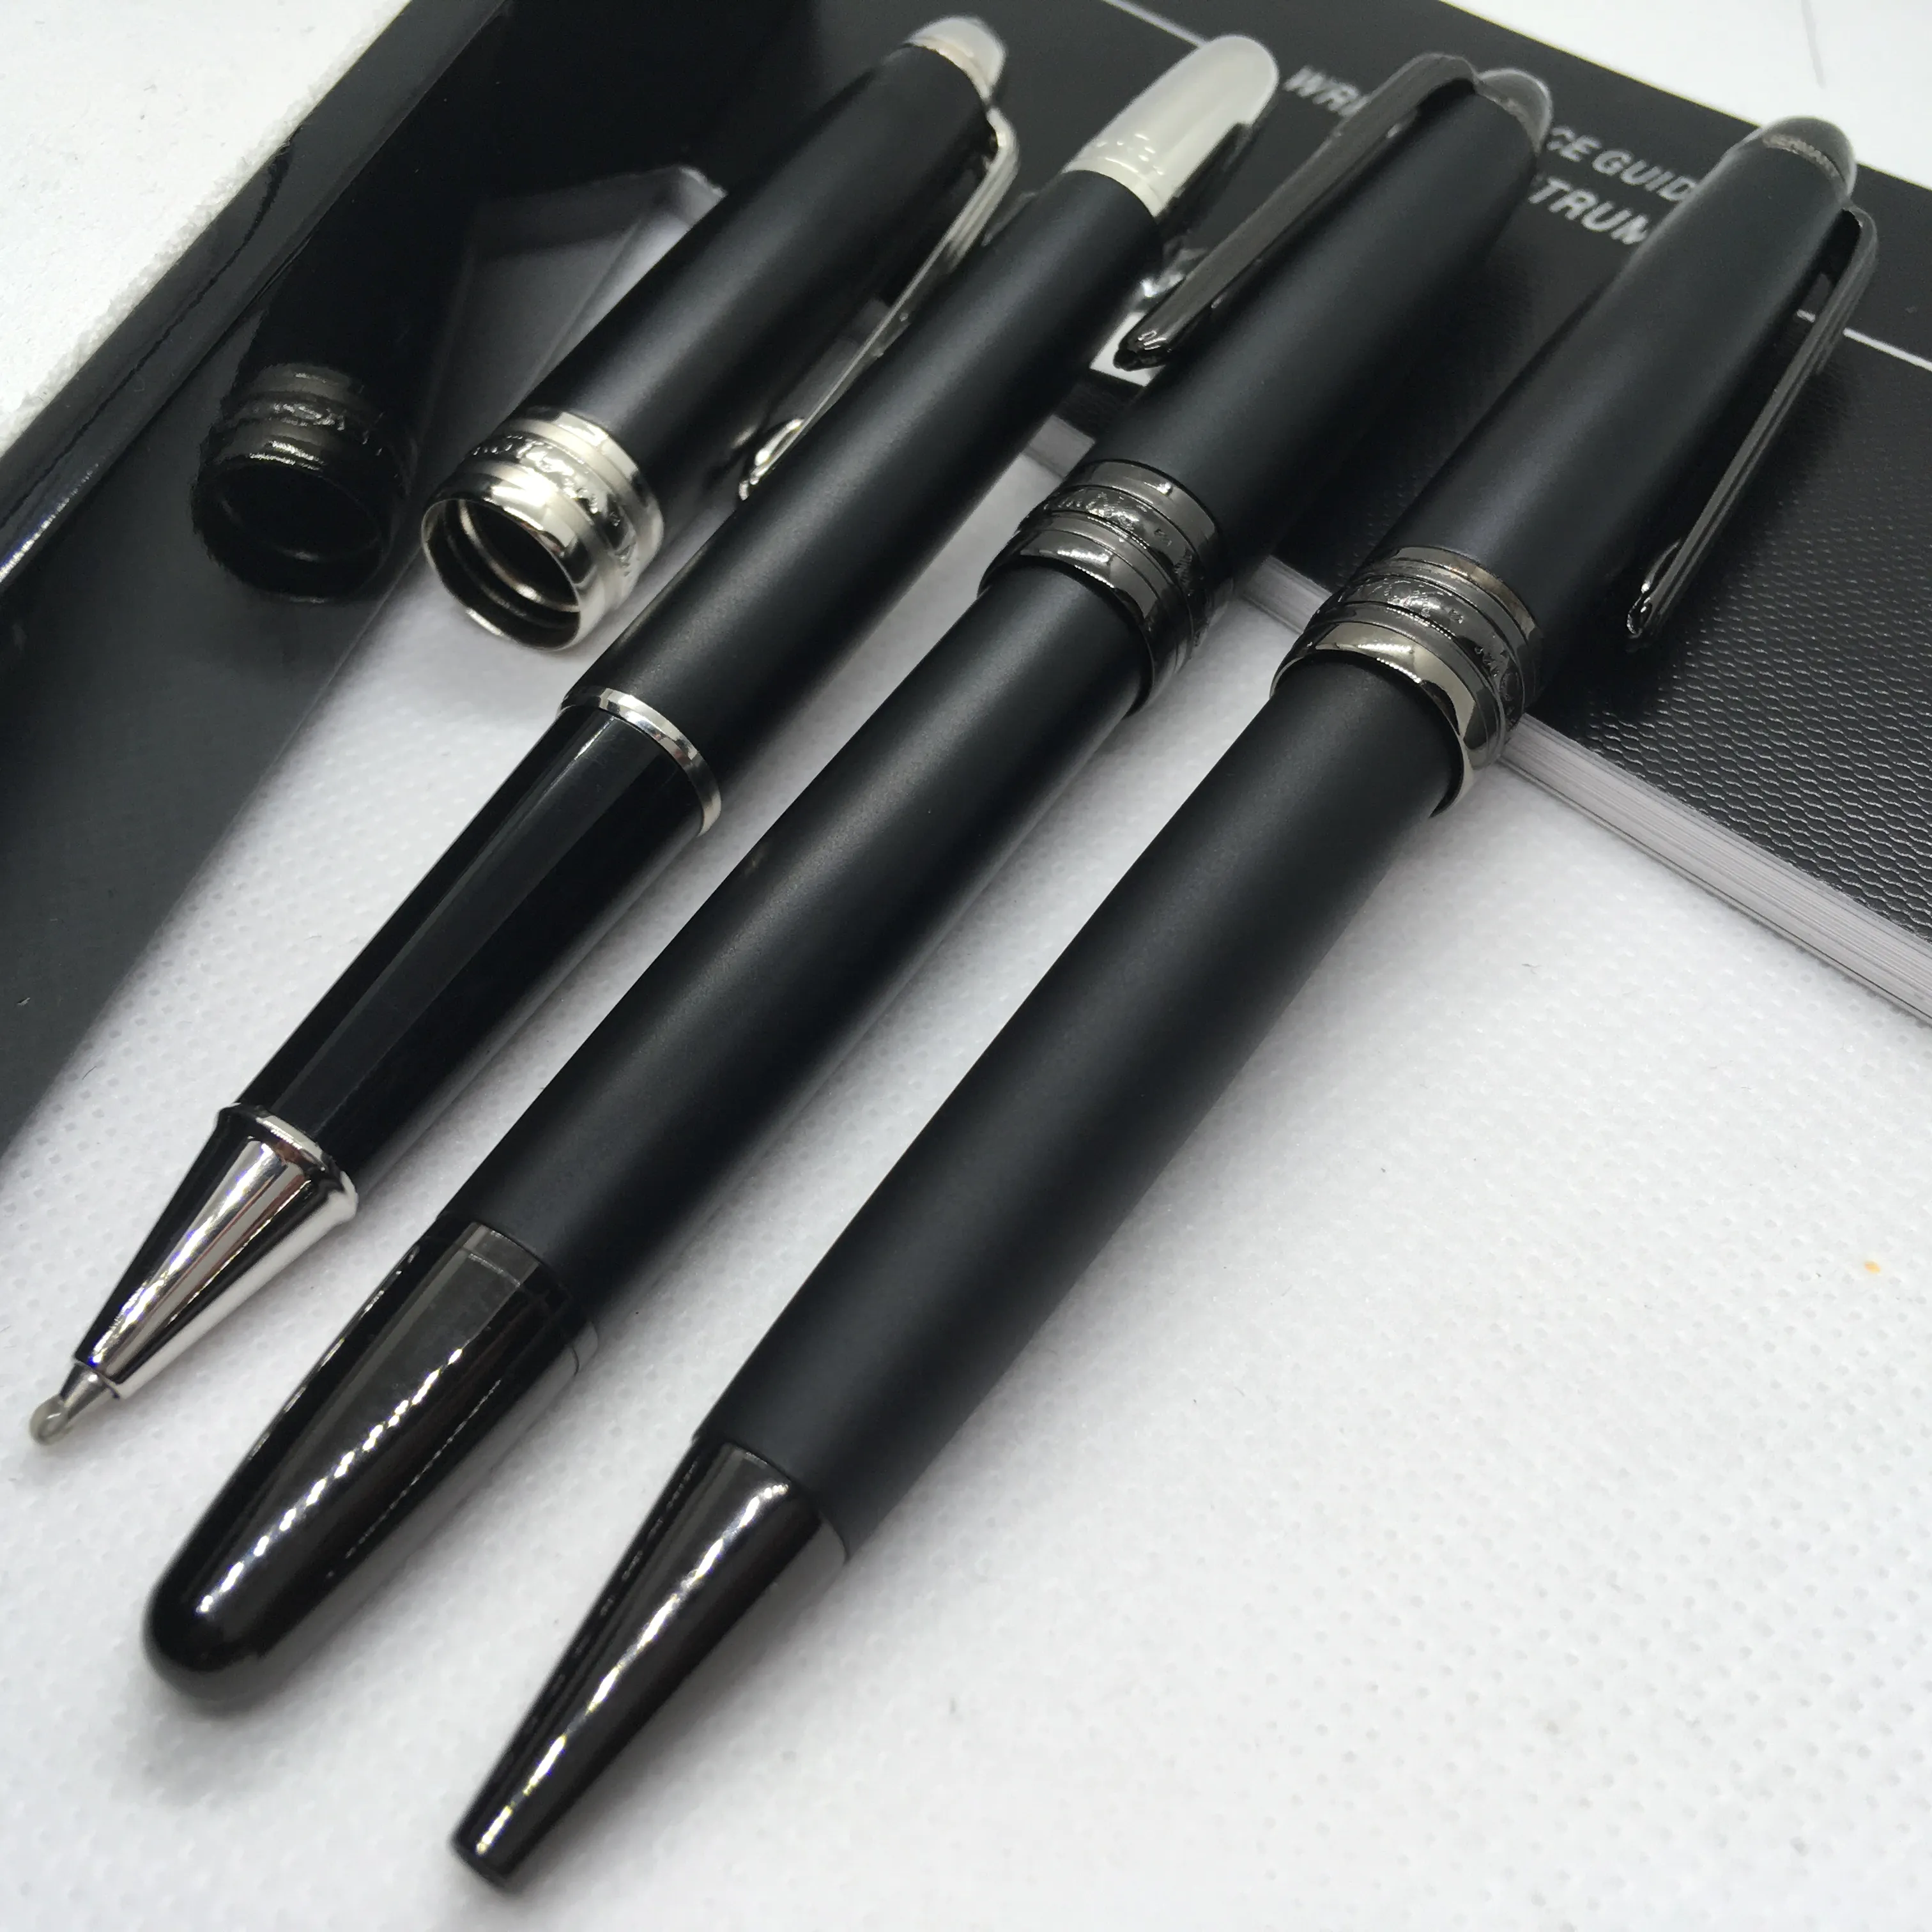 Skicka 1 presentläderväska matt svart rullboll pennpennor kulspet penna skolkontor med serie nummer296f